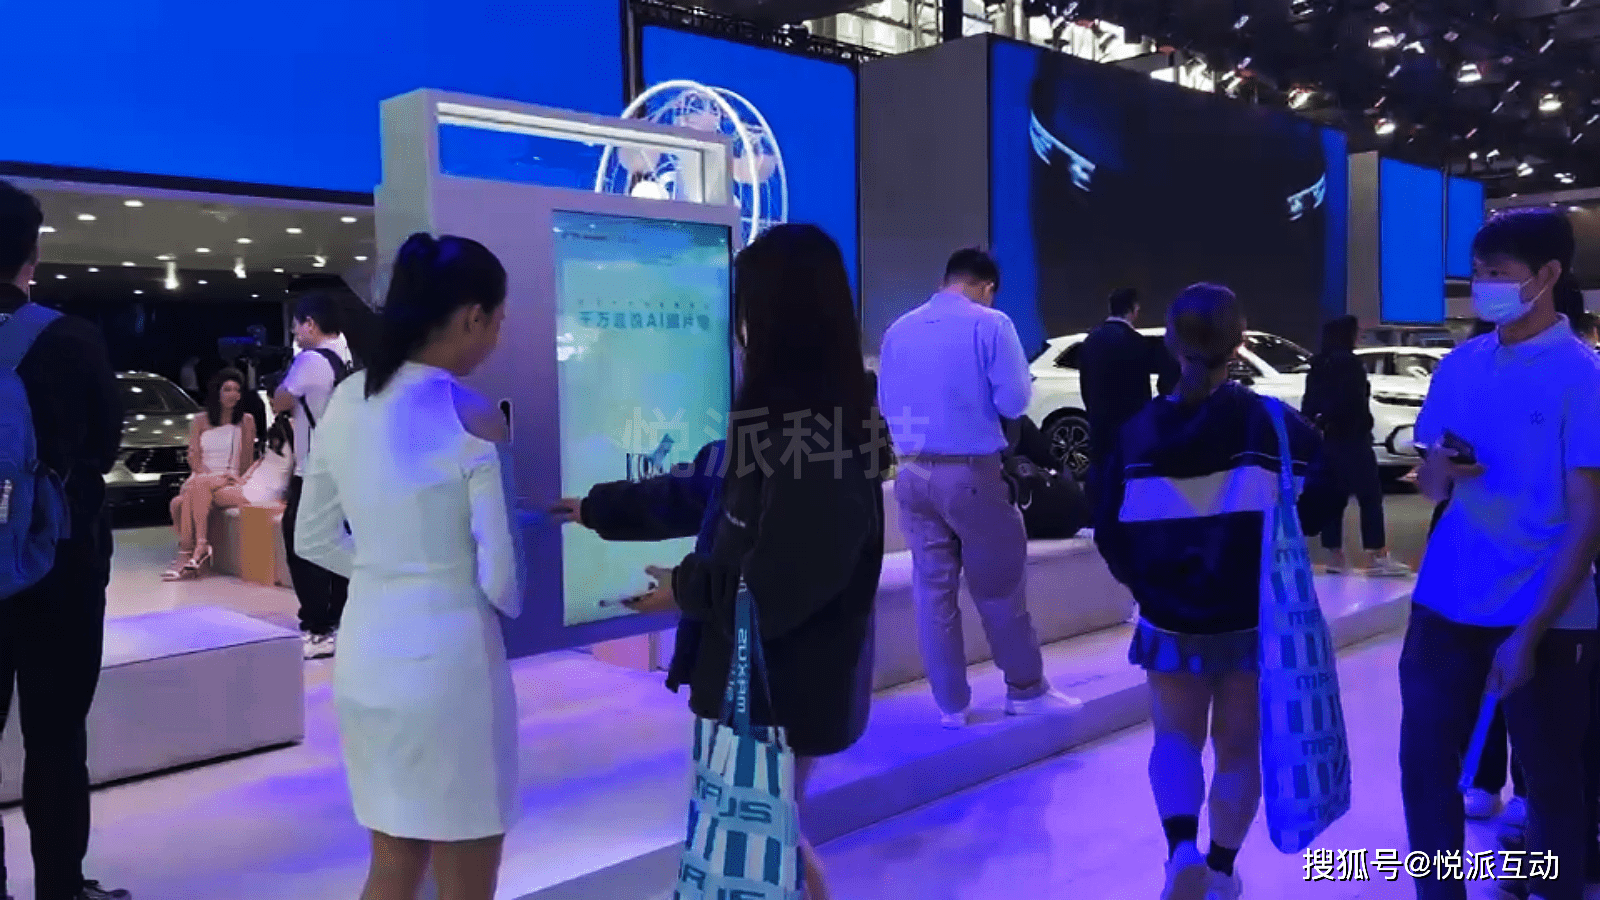 抖音真的互动游戏互动装置北京广告真的激活
:车展创意互动游戏装置激活潮流数字化展台